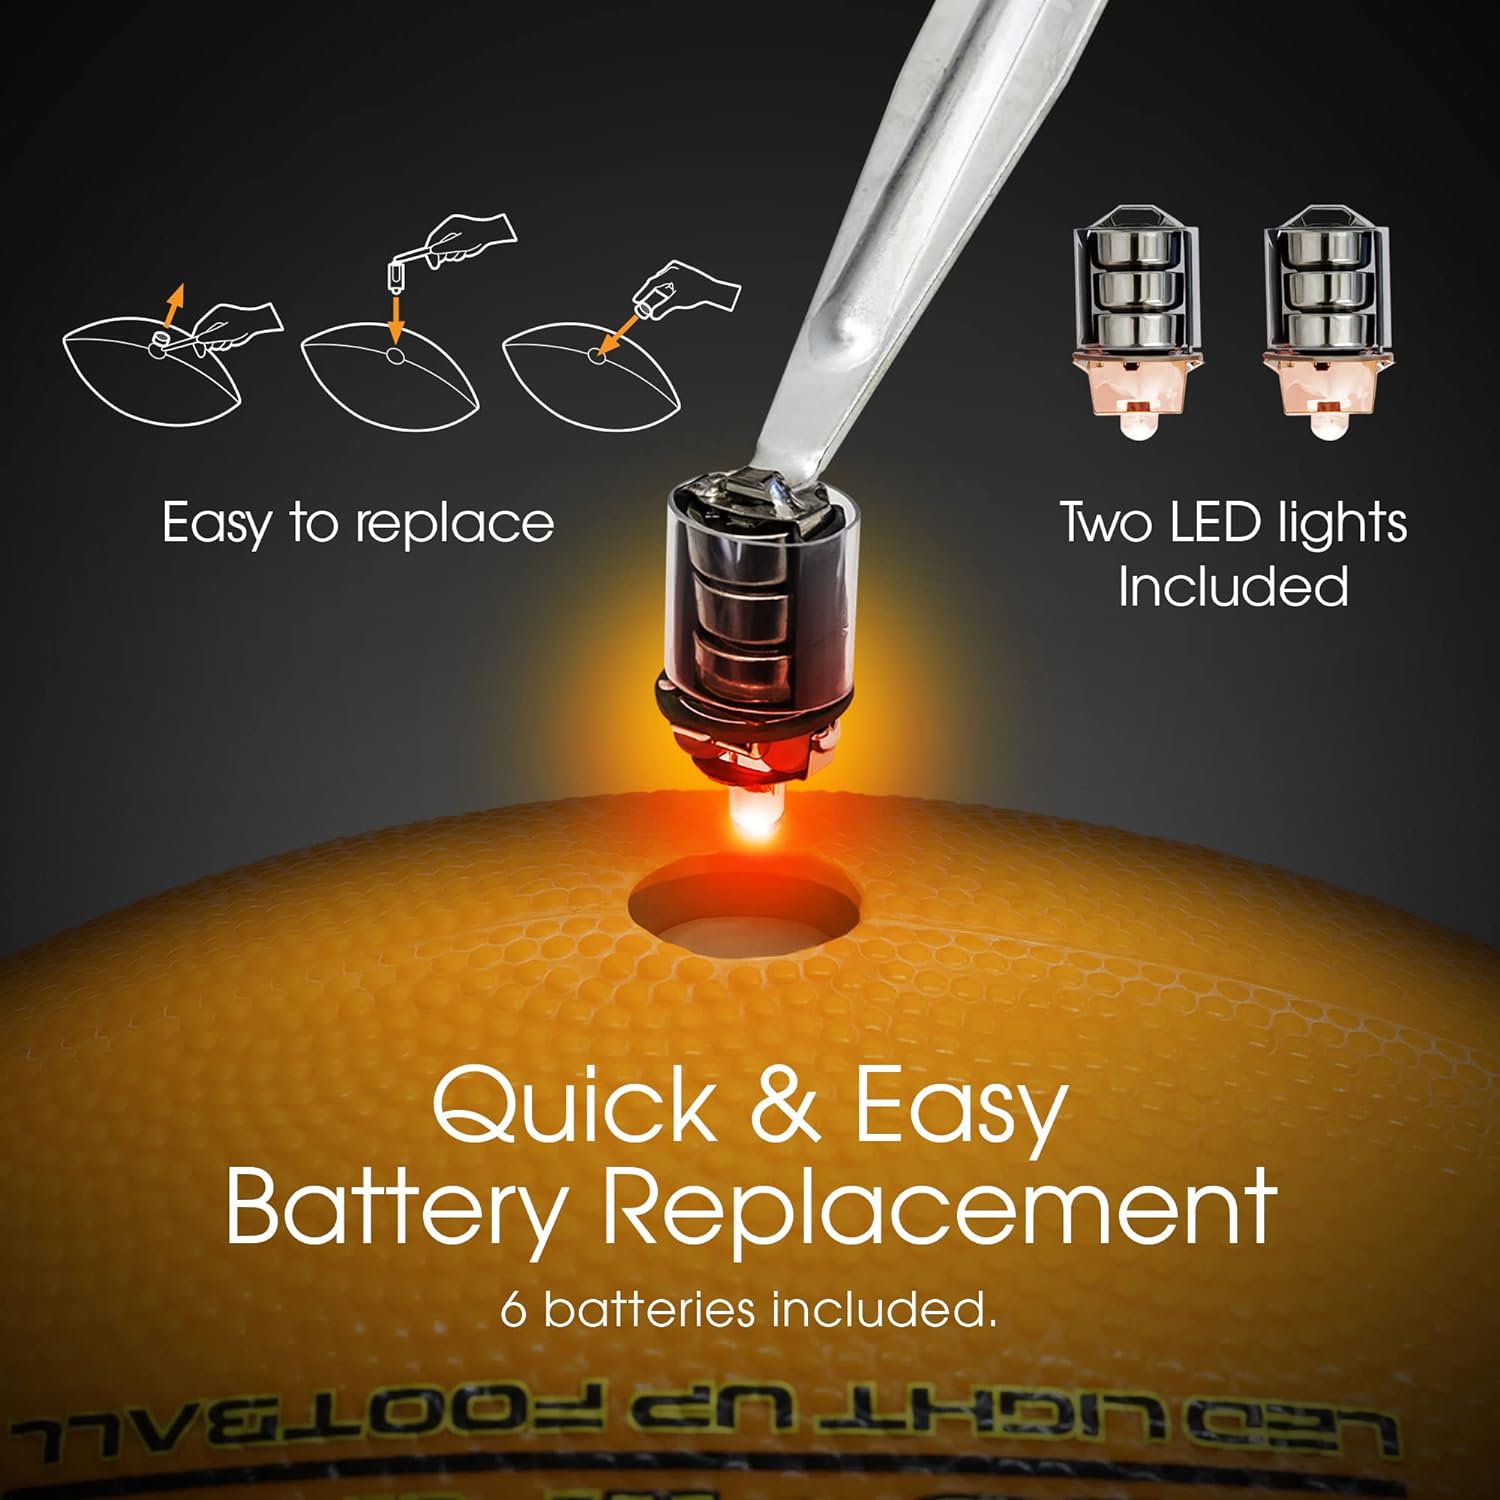 LED Premium Illuminite Football Electric Stripes Design (Junior)